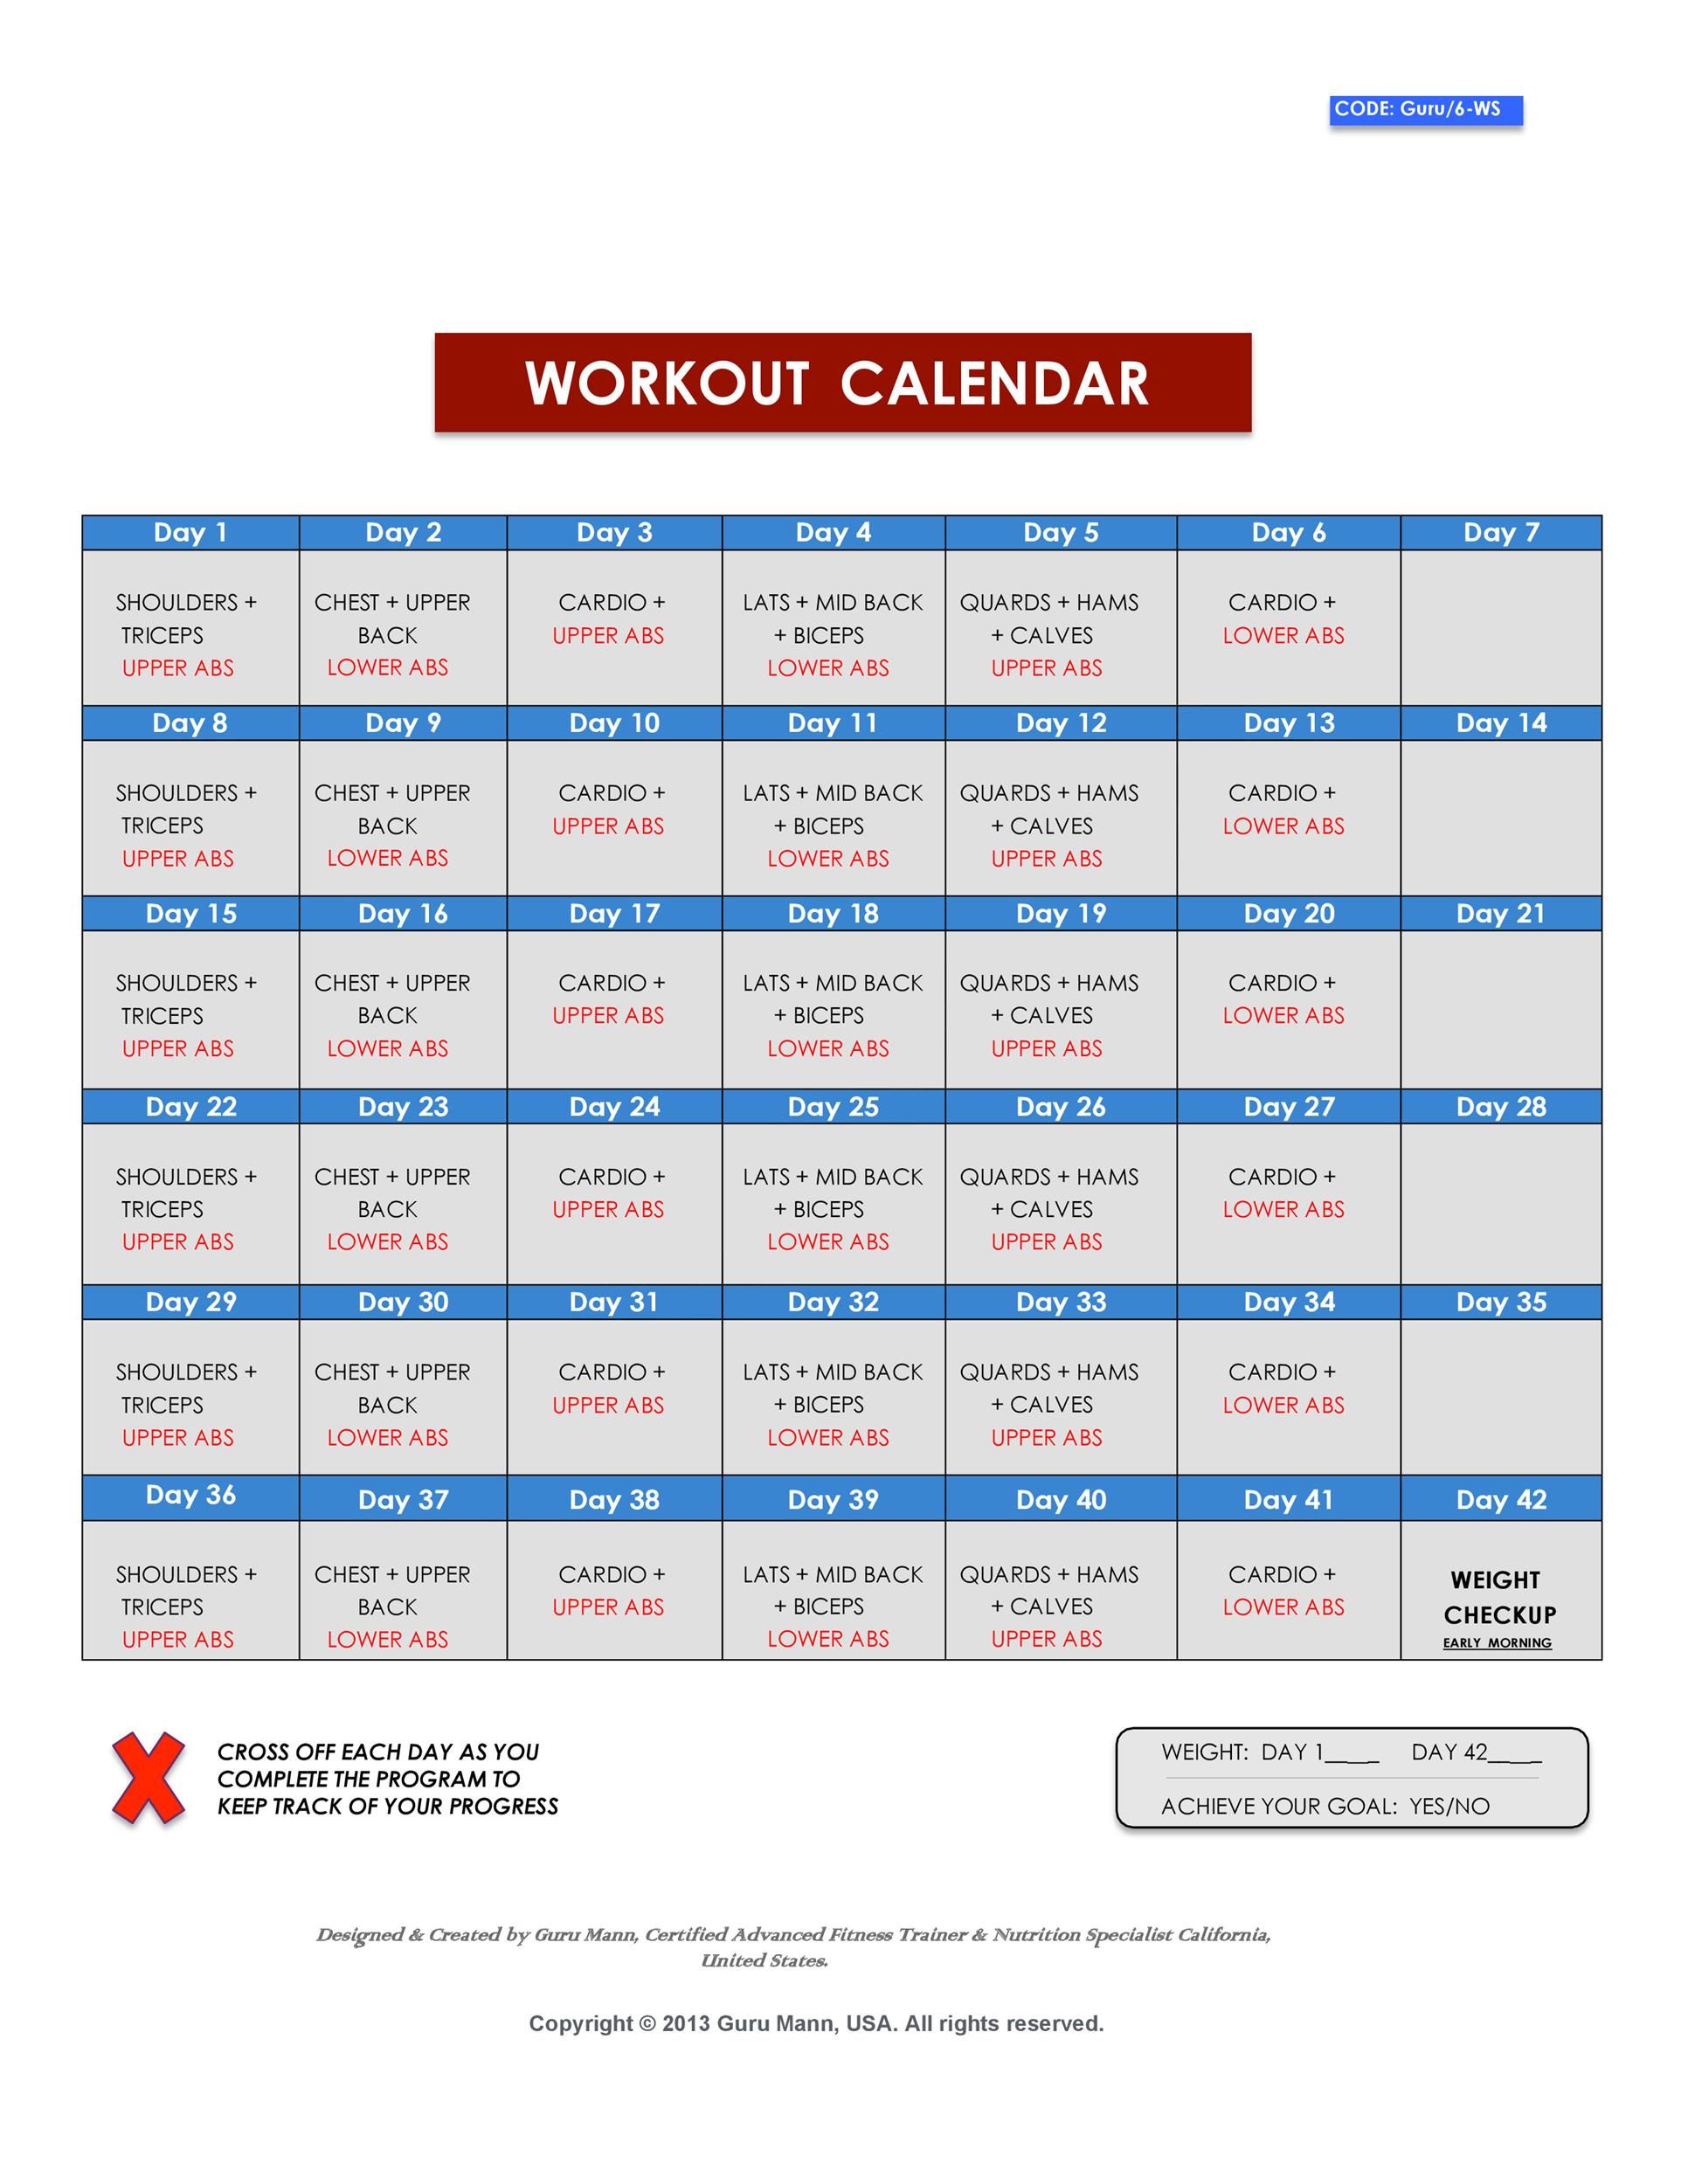 30 day workout calendar template 37